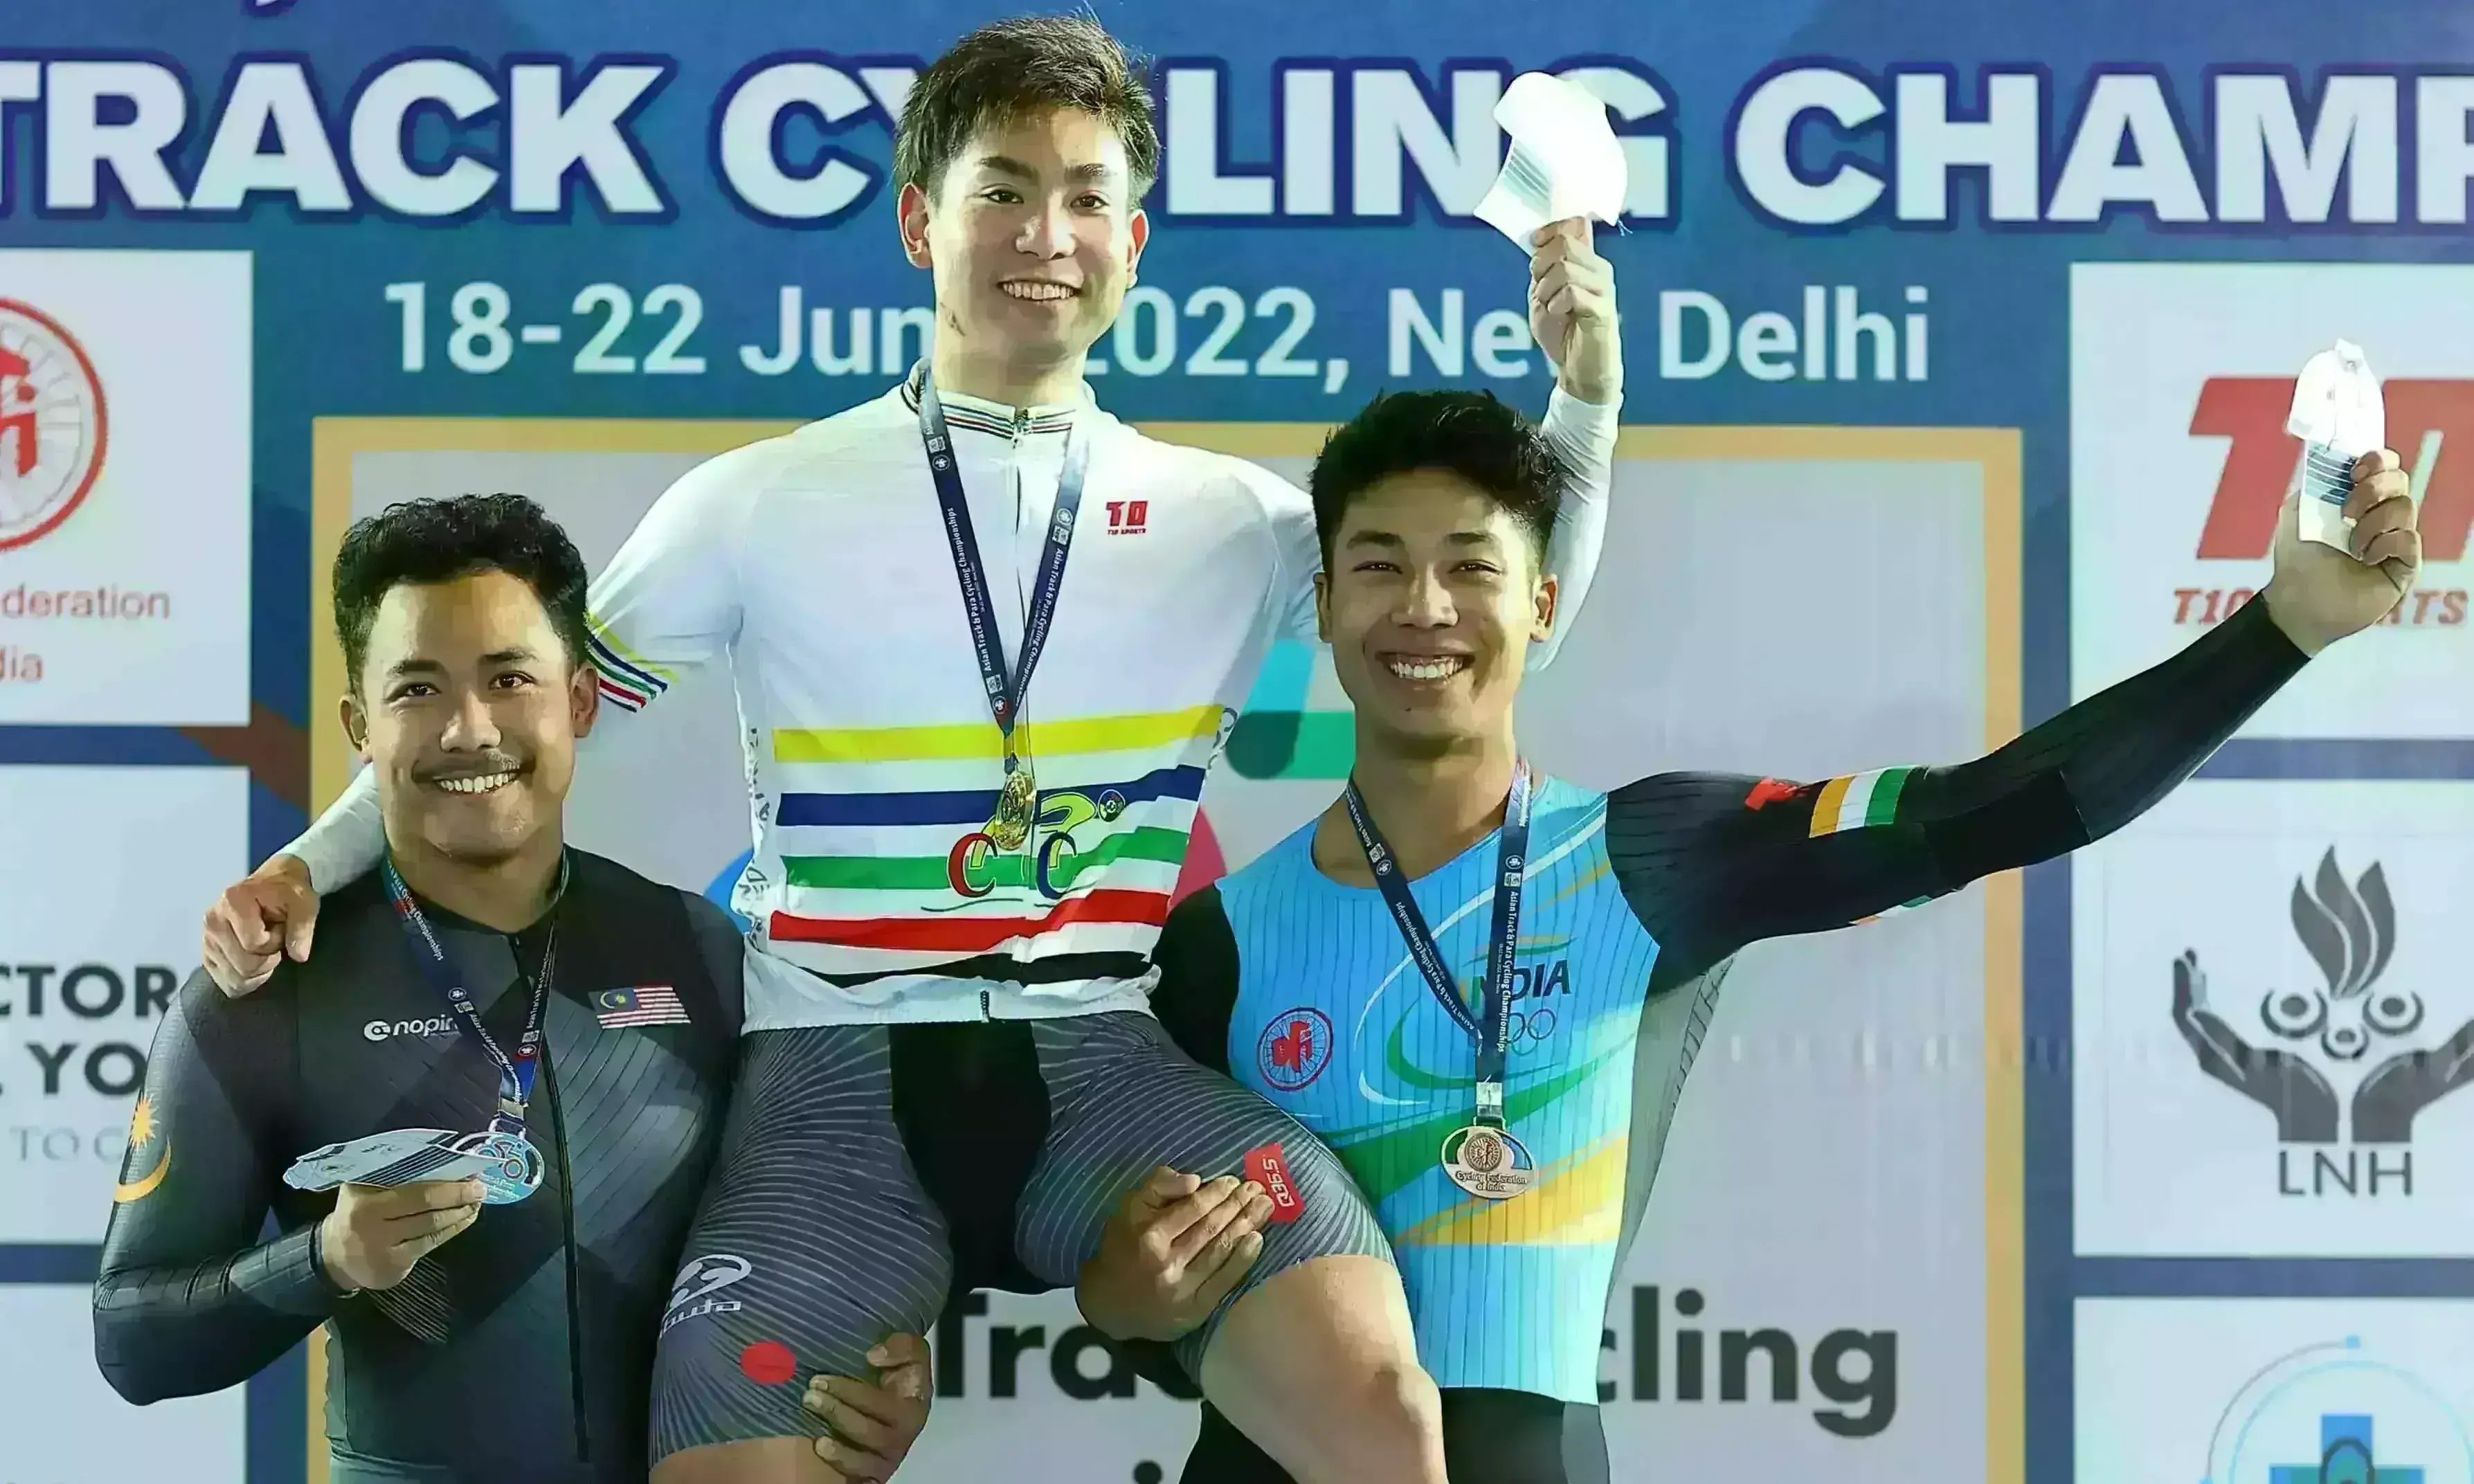 एशियन ट्रैक साइक्लिंग चैंपियनशिप : भारतीय एथलीटों ने तीसरे दिन जीते कांस्य पदक